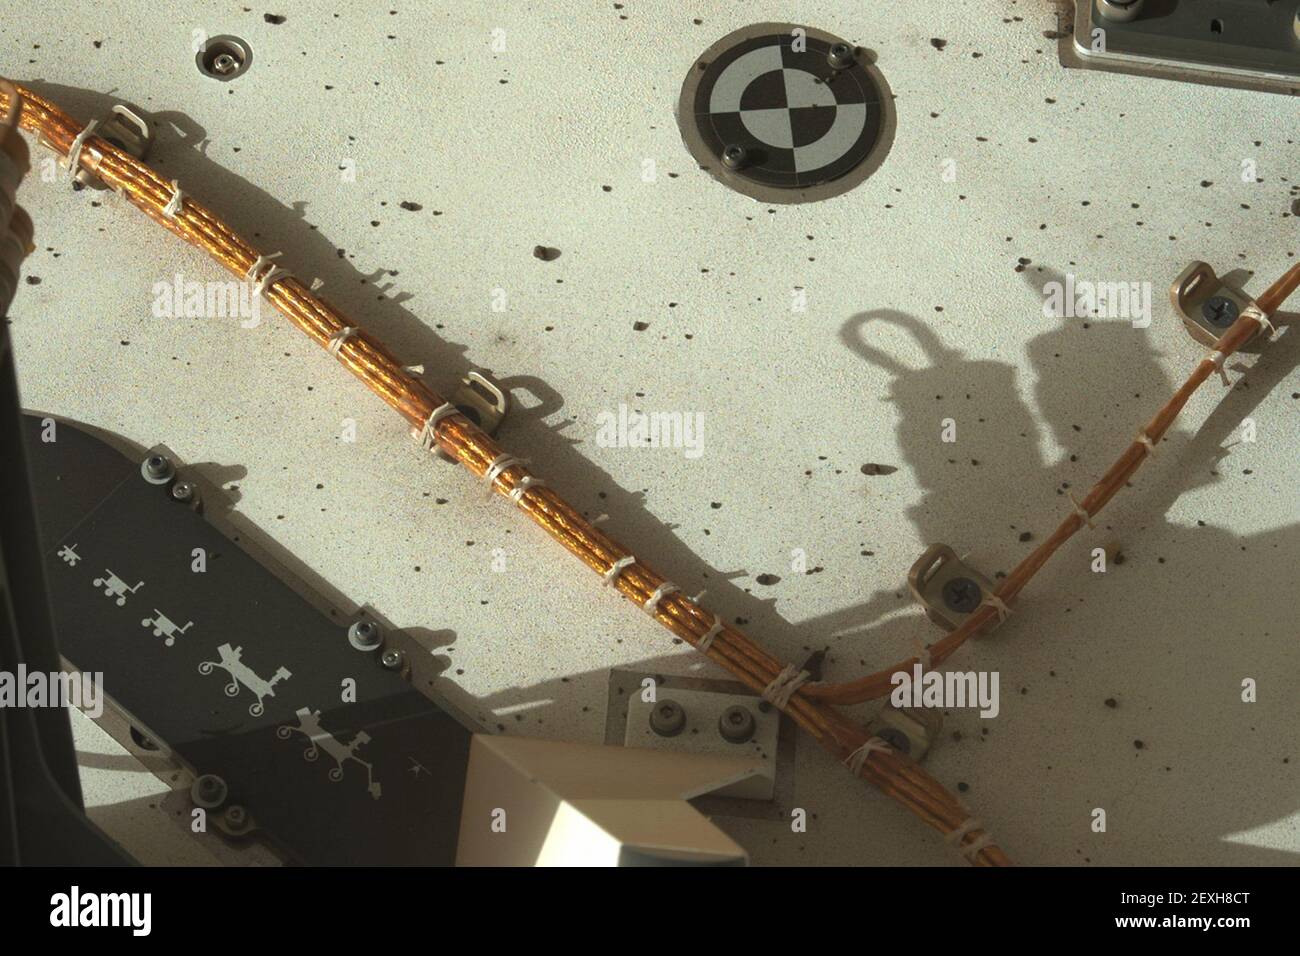 4 mars 2021 : Mars de la NASA, le rover persévérance a acquis cette image en utilisant sa caméra Mastcam-Z droite. Mastcam-Z est une paire de caméras situées en hauteur sur le mât du rover. Cette image a été acquise le 24 février 2021 (sol 3), à l'heure solaire moyenne locale de 16:22:38. Les rovers sont alignés dans le même ordre qu'ils ont débarqué sur la planète Rouge : le Sojourner rover (1997), le Twin Mars exploration Rovers Spirit and Opportunity (2004), le rover de curiosité (2012), et la persévérance. Crédit : UPI/Alay Live News Banque D'Images